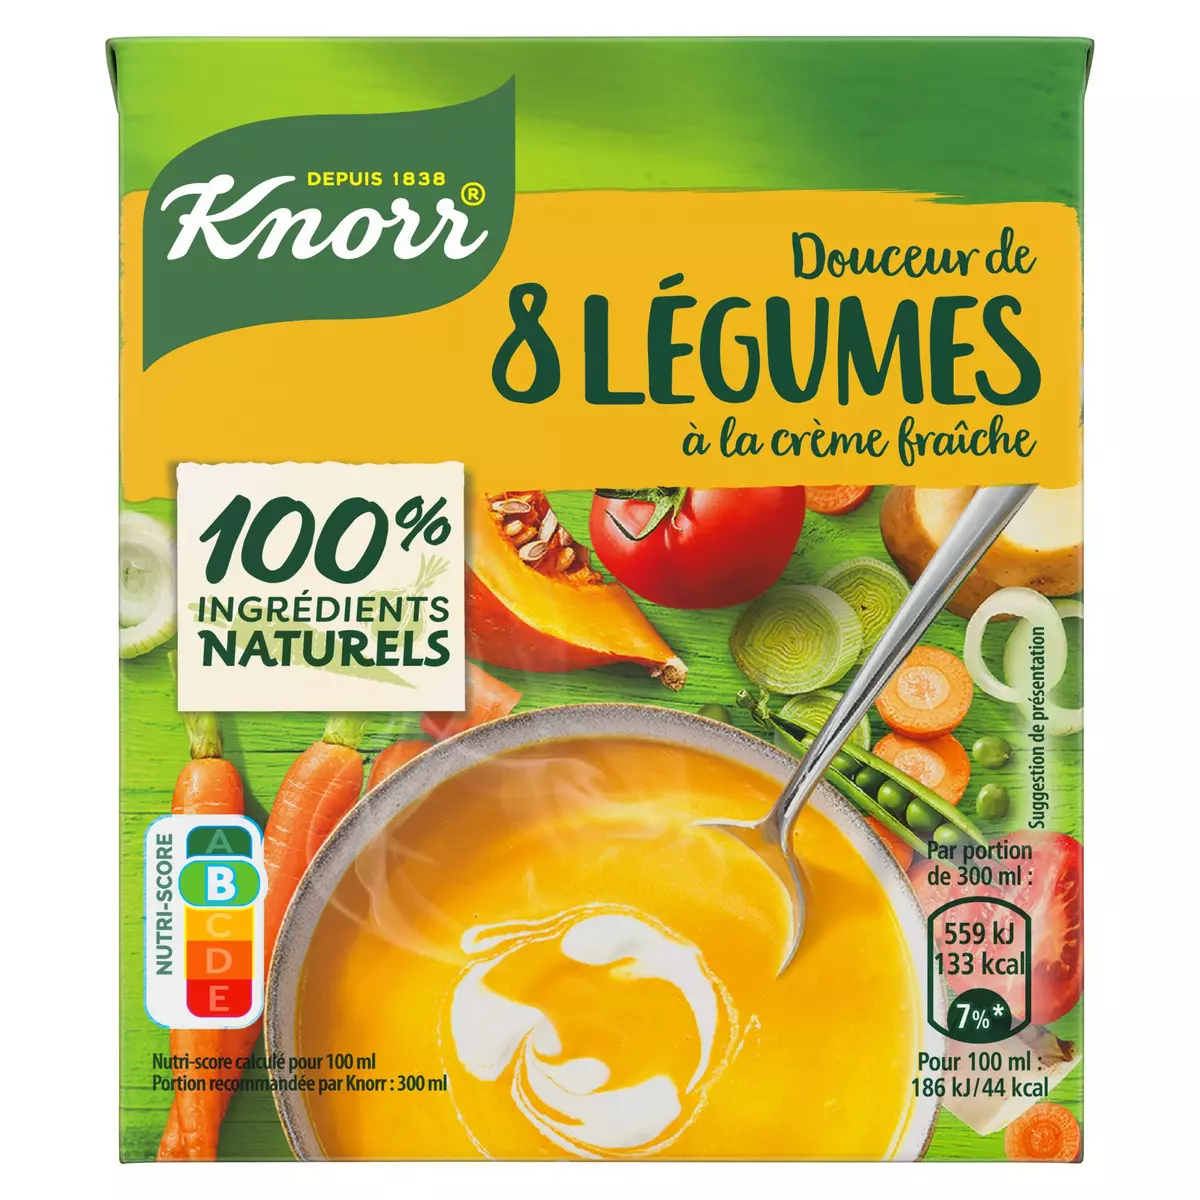 KNORR Soupe douceur de 8 légumes à la crème fraîche 1 personne 30cl